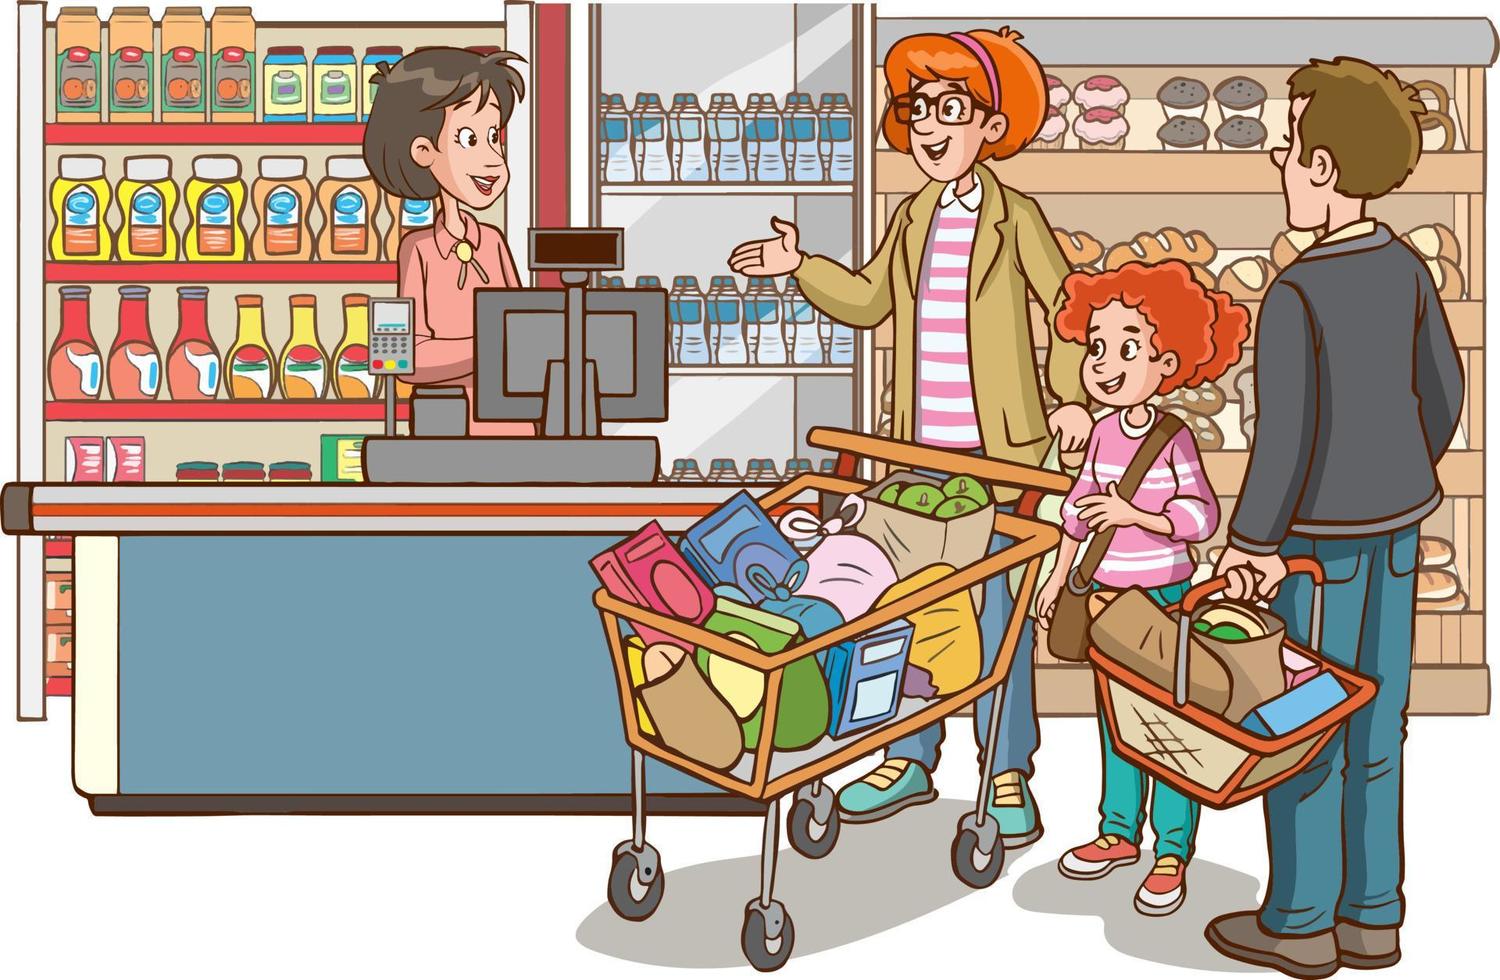 shopping bambini e famiglia cartone animato vettore illustrazione